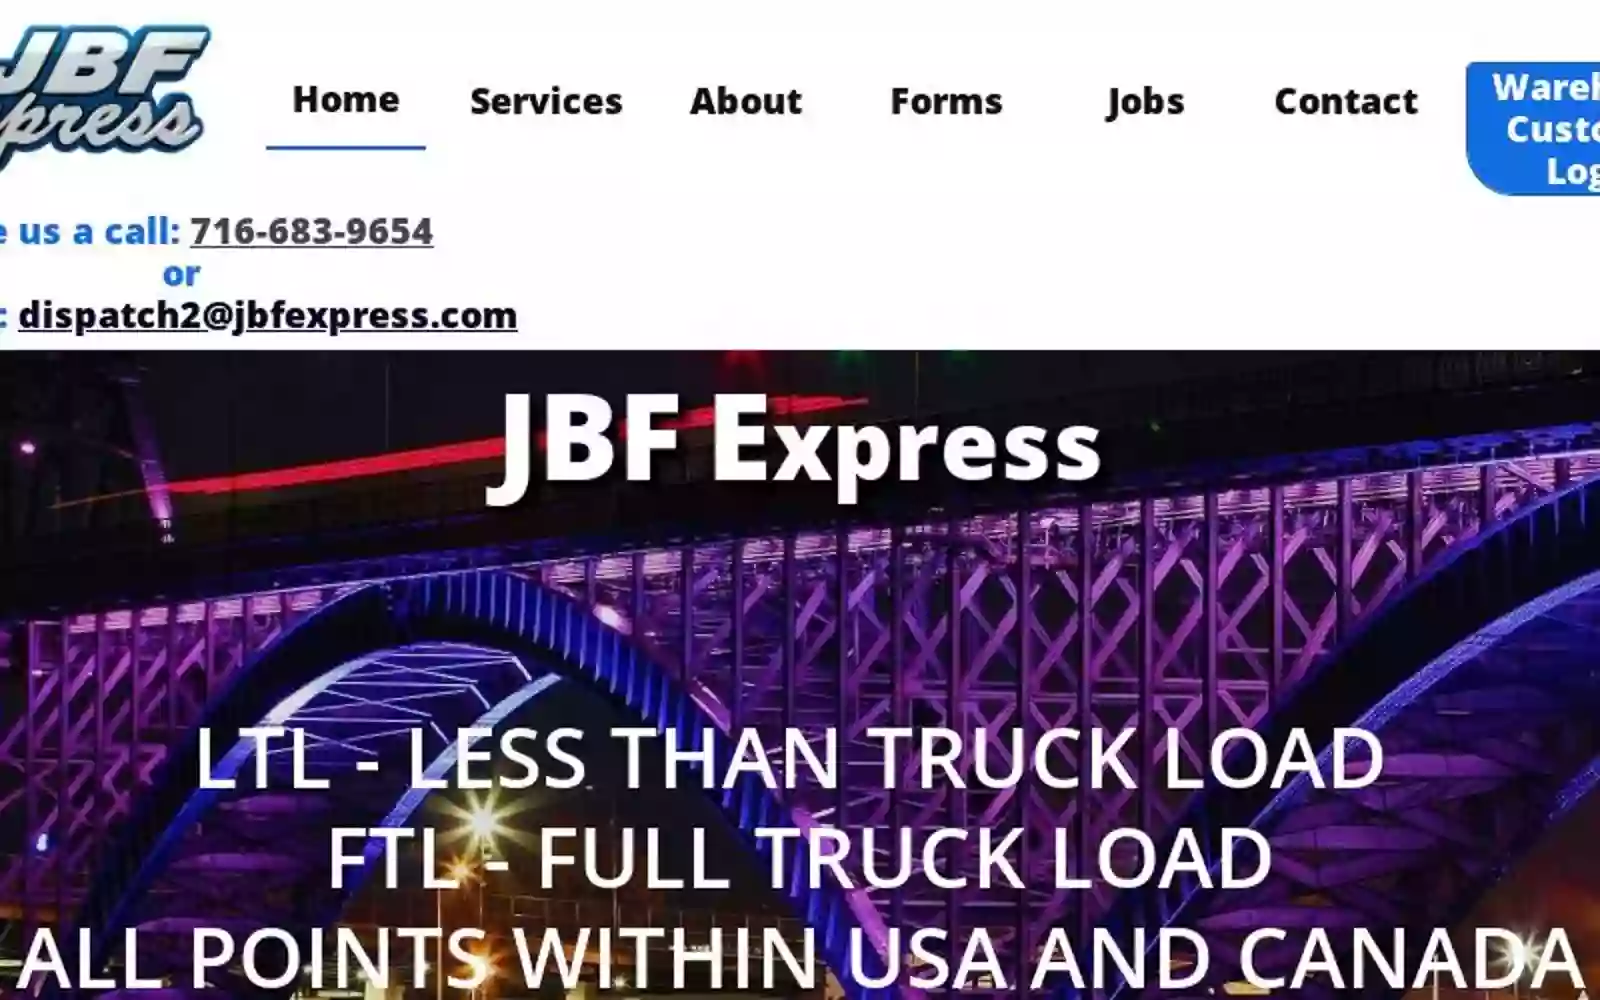 JBF Express